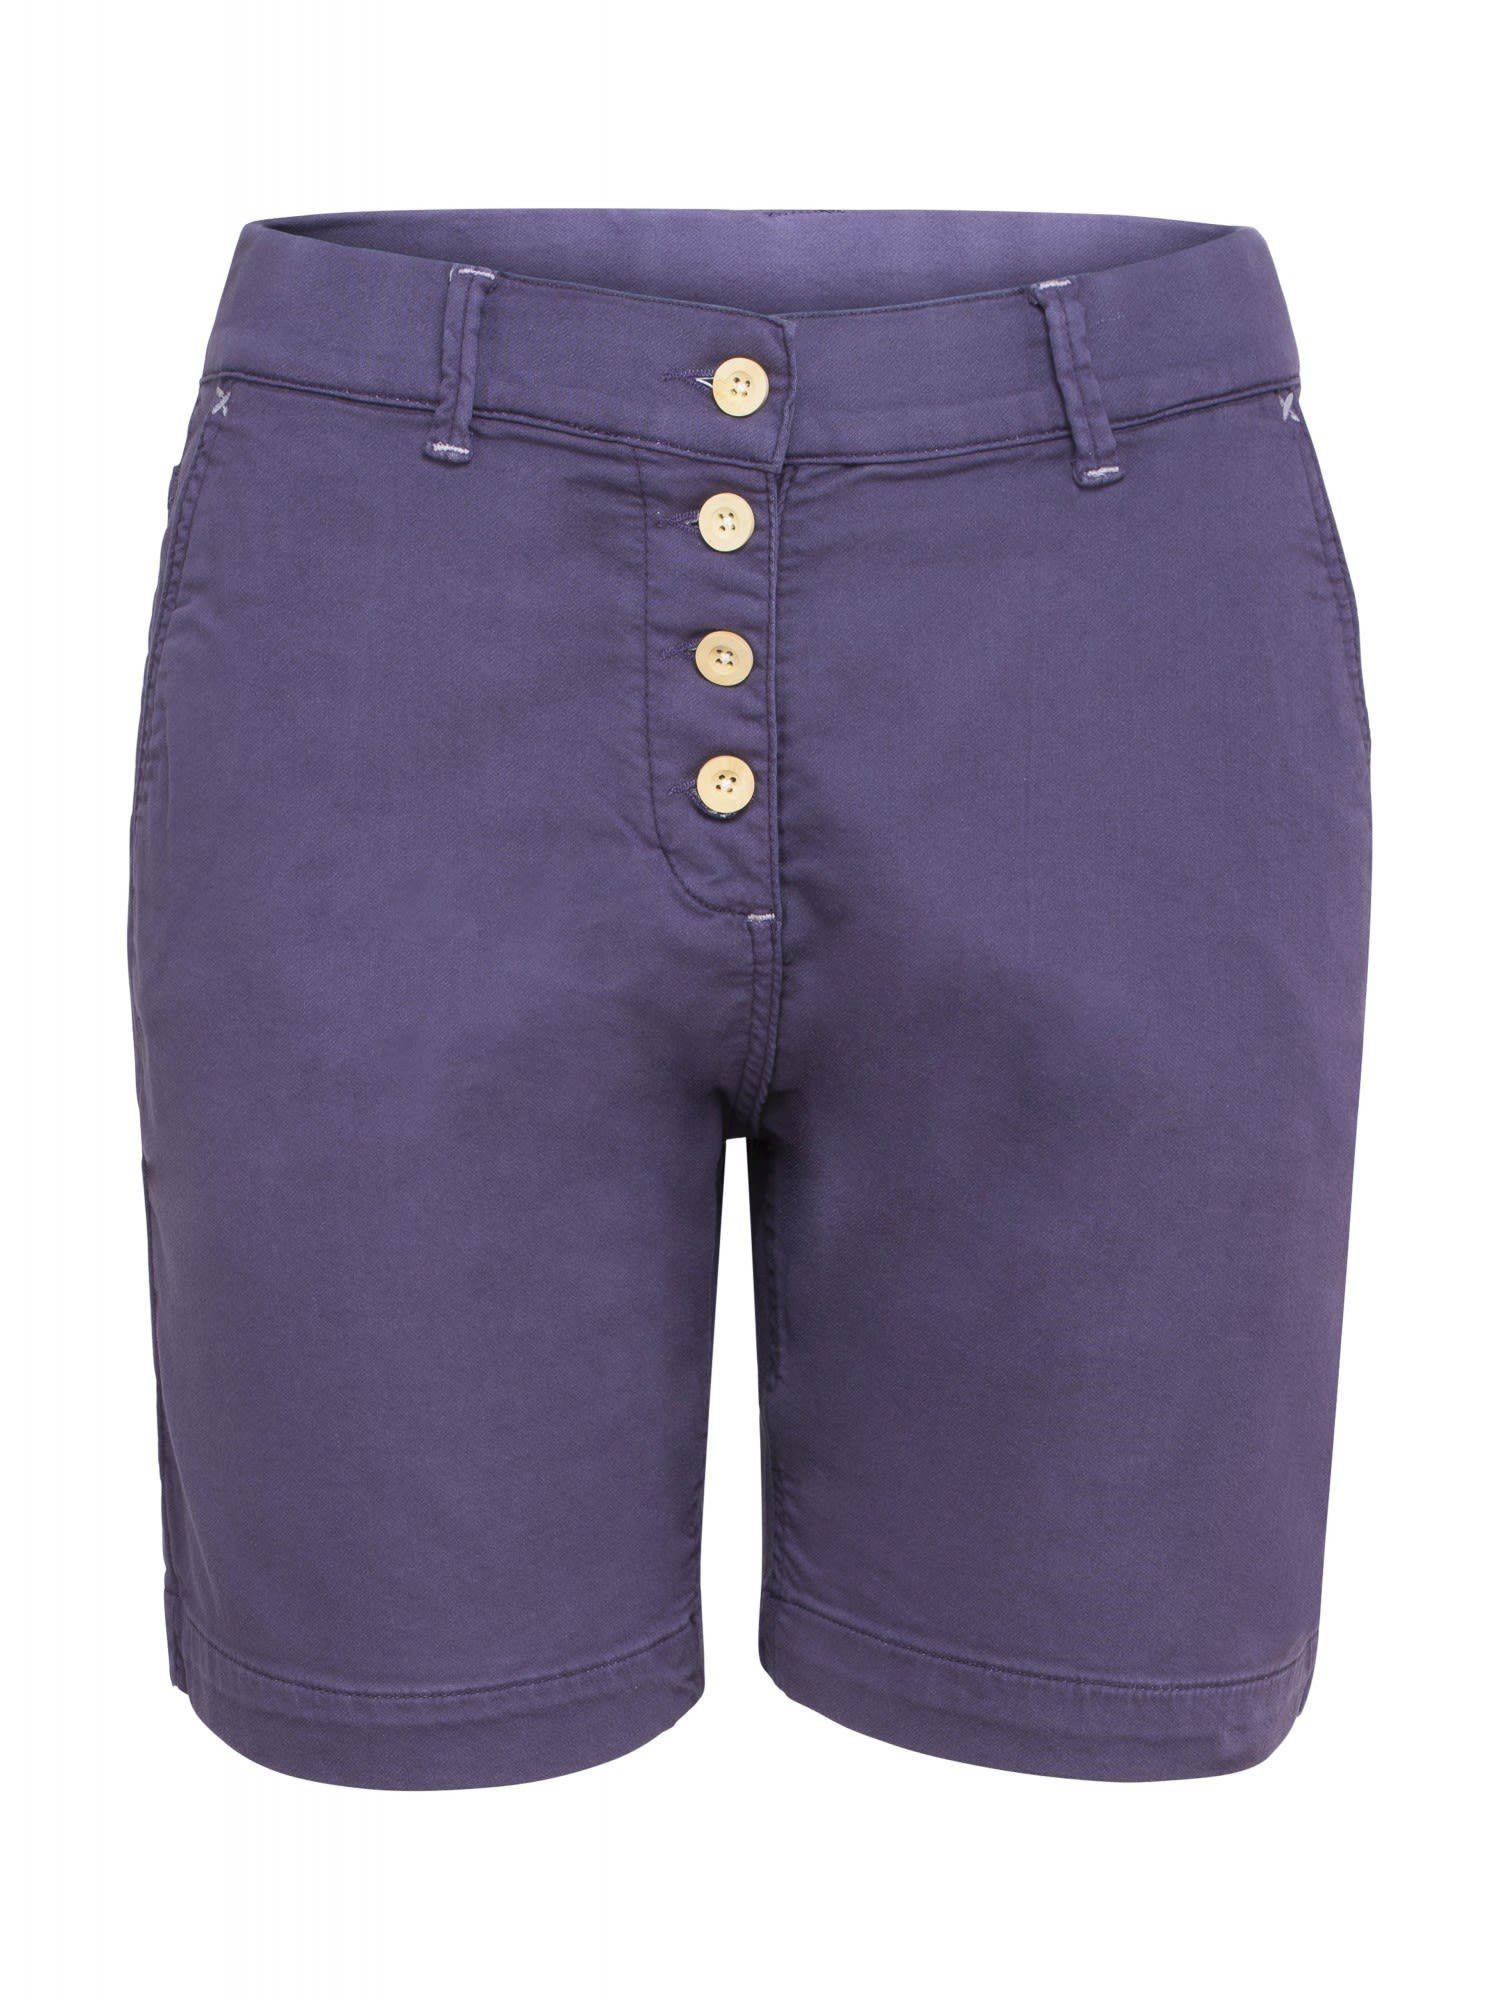 Shorty Dark Chillaz Almspitz Damen Strandshorts Purple Shorts W Chillaz